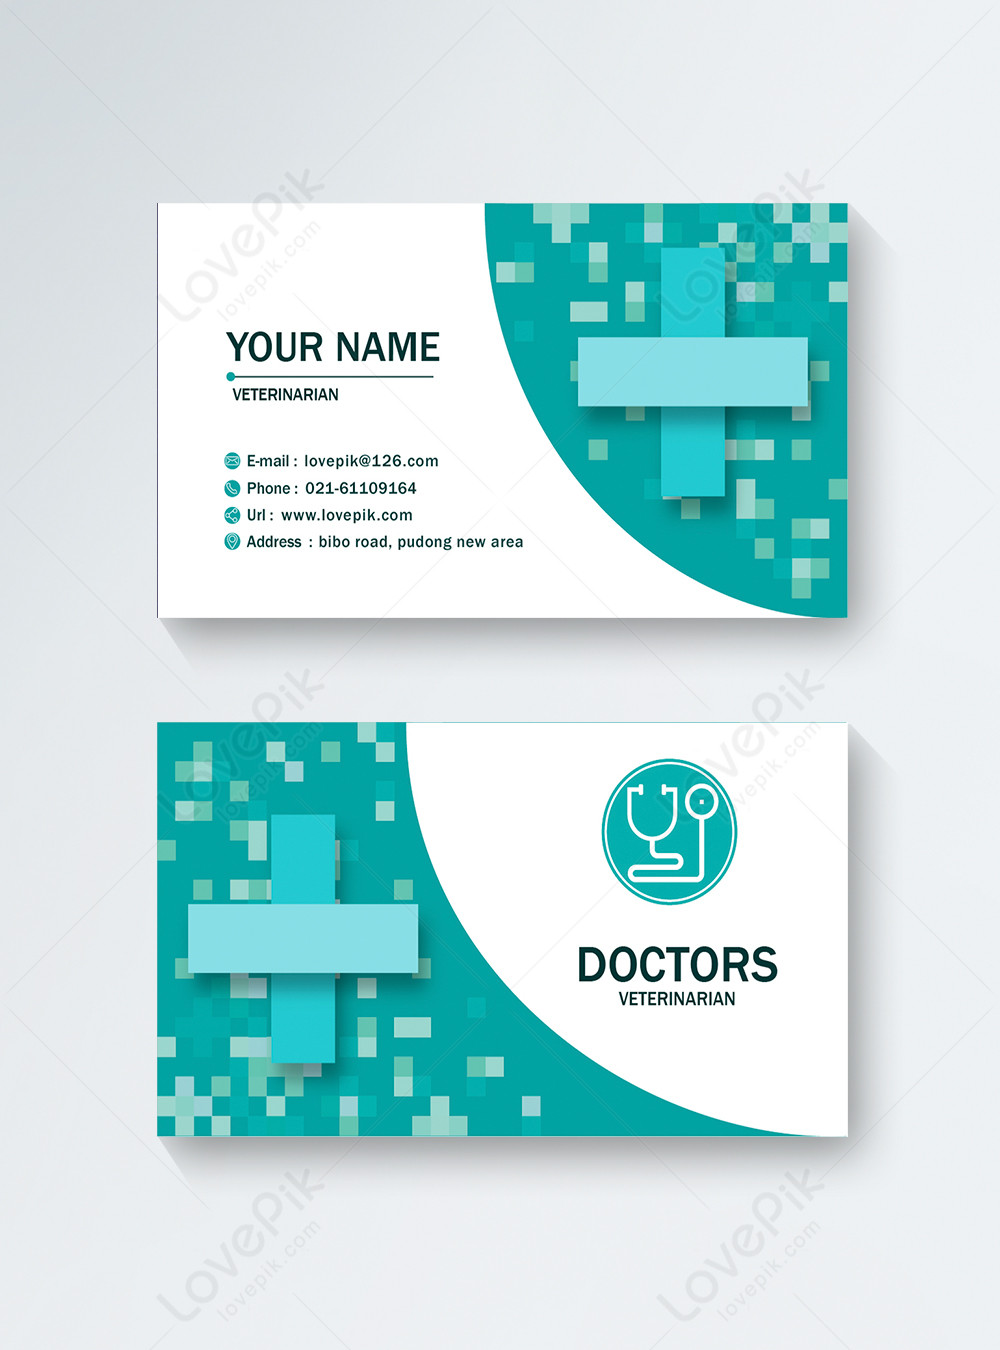 تصميم بطاقة عمل طبيب